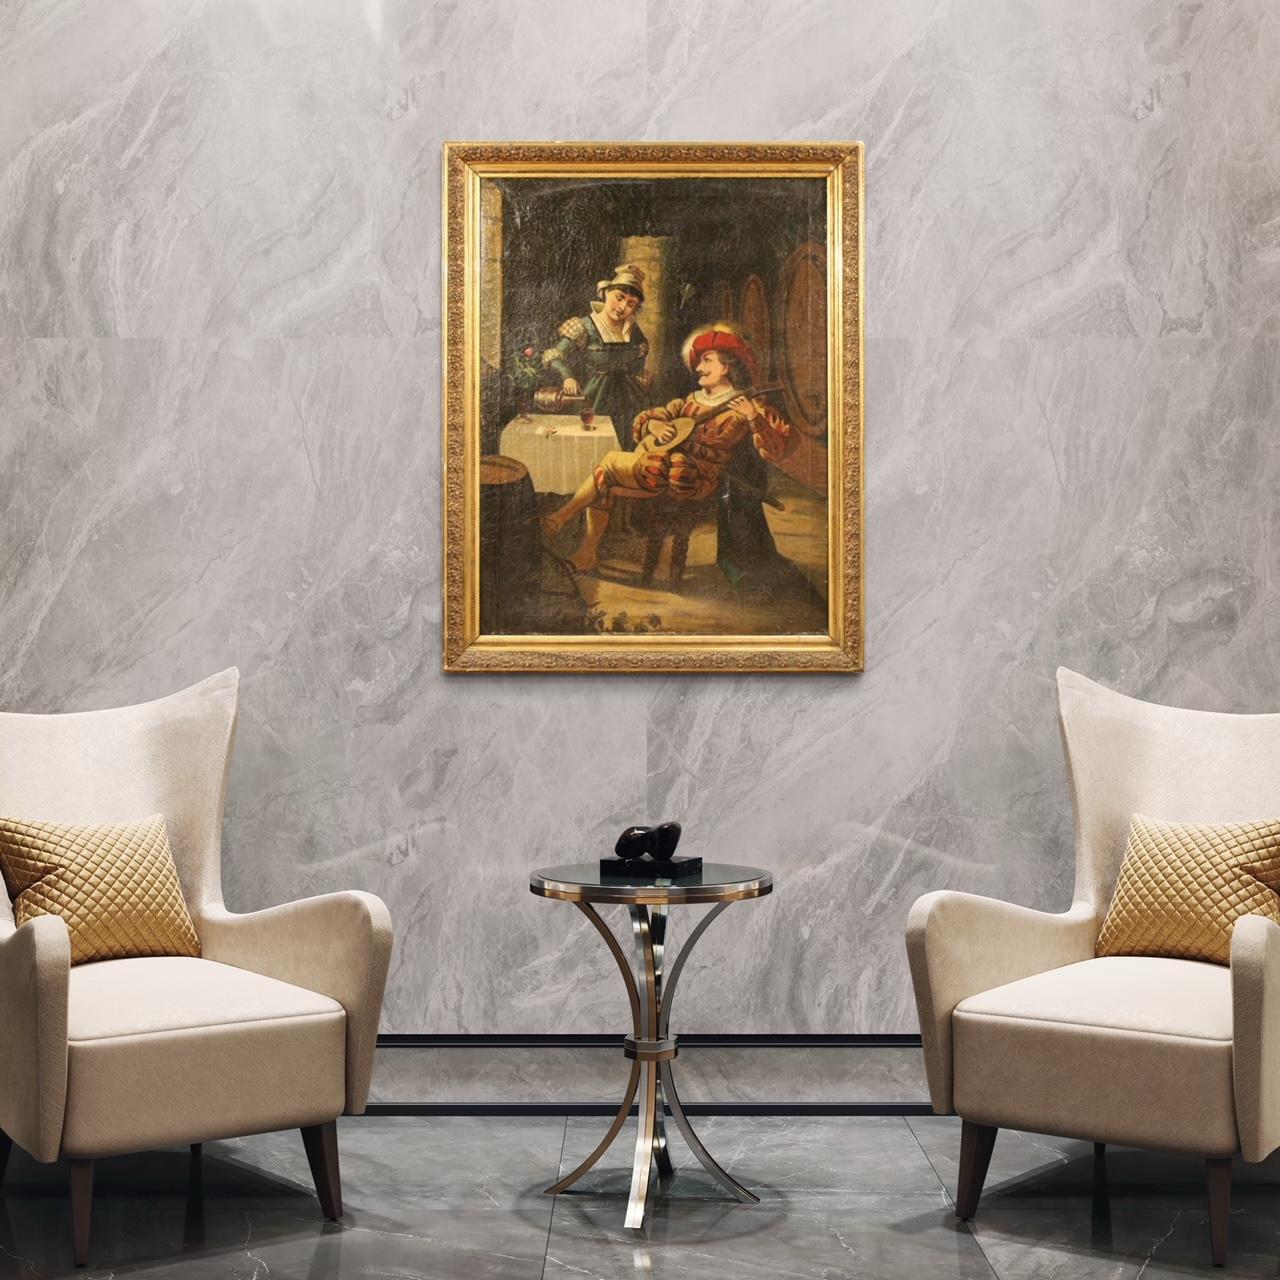 Großes italienisches Gemälde aus dem frühen 20. Rahmen Öl auf Leinwand, in der ersten Leinwand, die eine Innenszene mit Musiker von guter malerischer Qualität. Großer Einfluss Rahmen, der angenehmen Dekor. Nicht-zeitgenössischer Rahmen aus Holz und